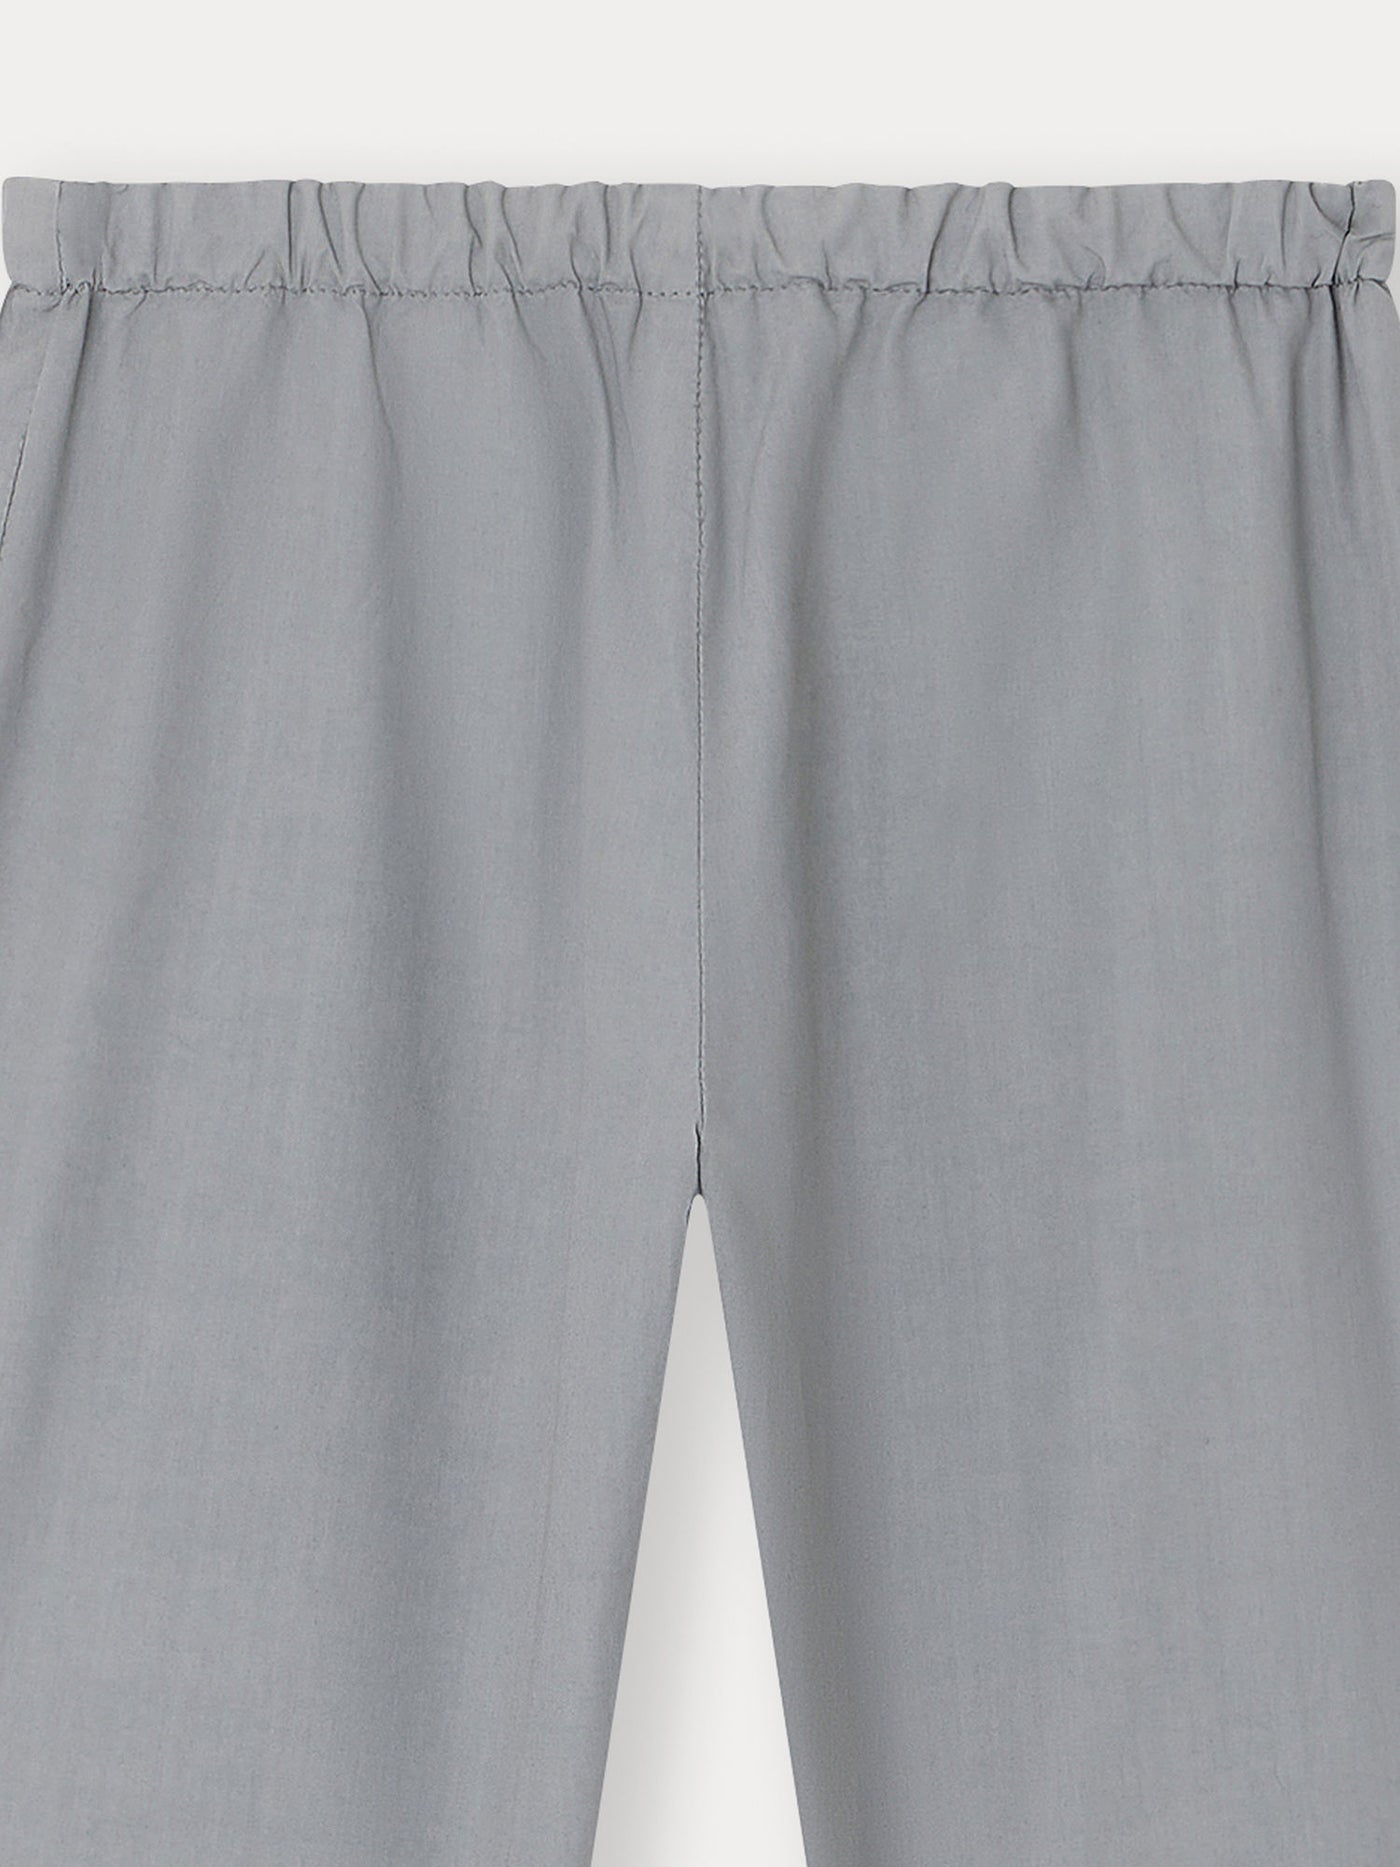 Dandy Pants slate gray